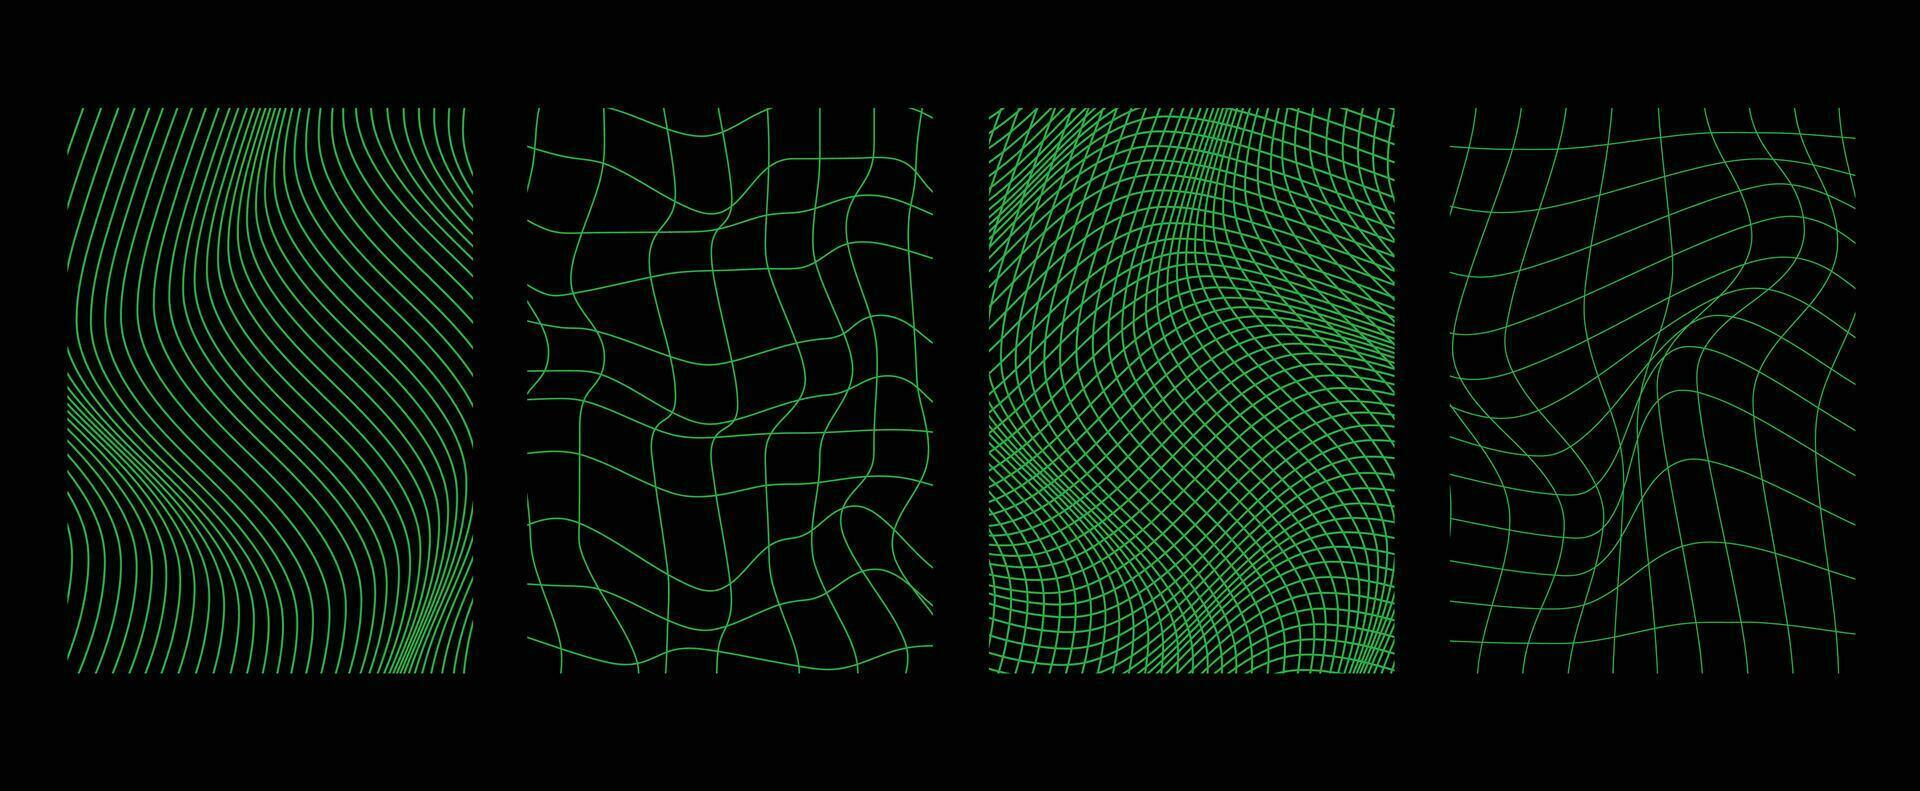 samling av trogen cyberpunk stil element. geometrisk trådmodell av fyrkant, förvrängning, rutnät med neon grön Färg. retro grafisk på svart bakgrund för dekoration, företag, omslag, affisch. vektor